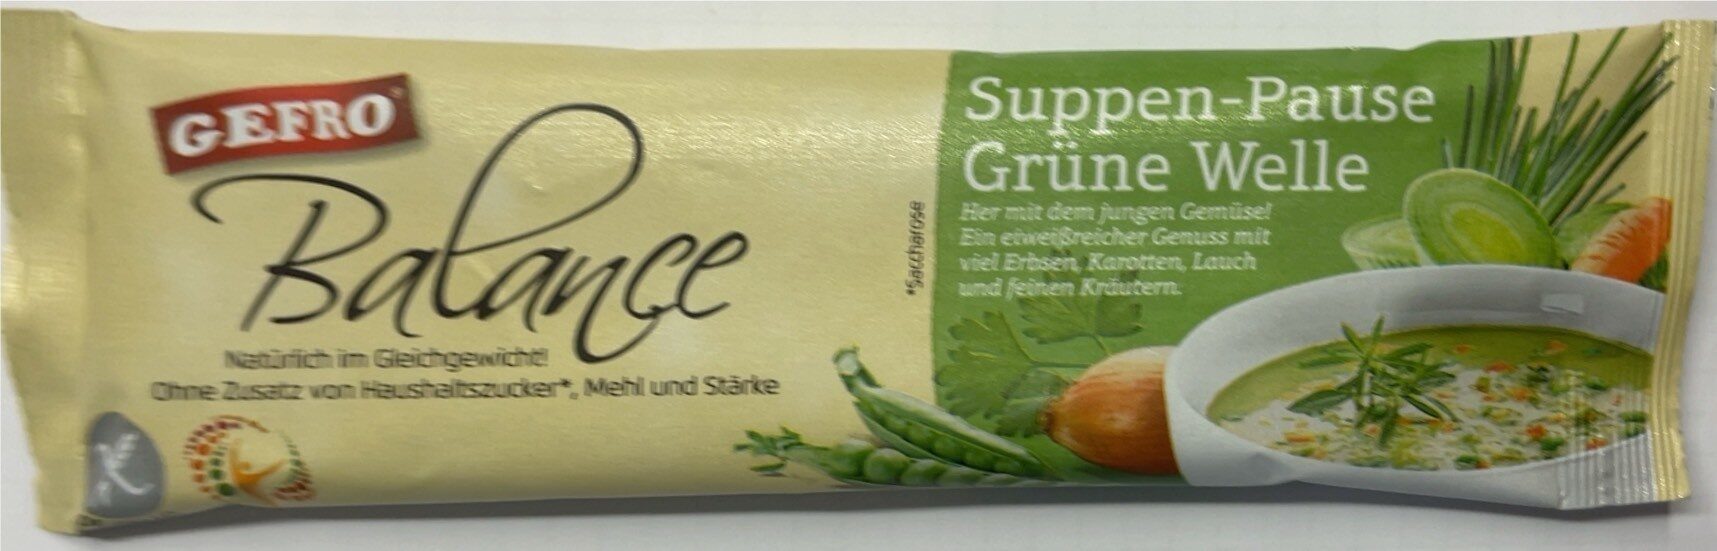 Suppen-Pause Grüne Welle - Produit